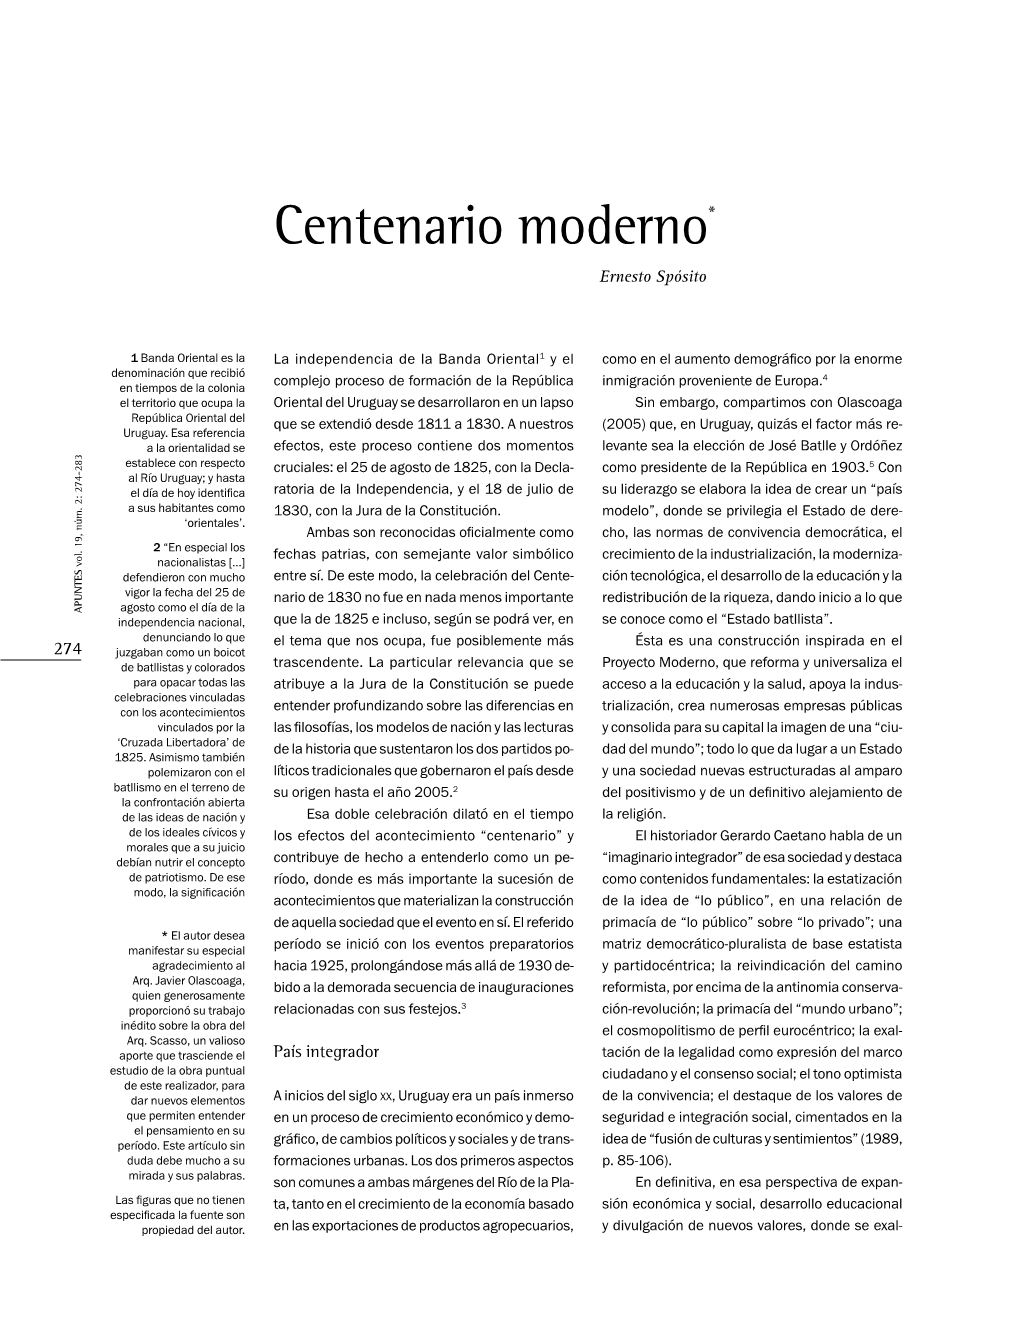 Centenario Moderno* Ernesto Spósito